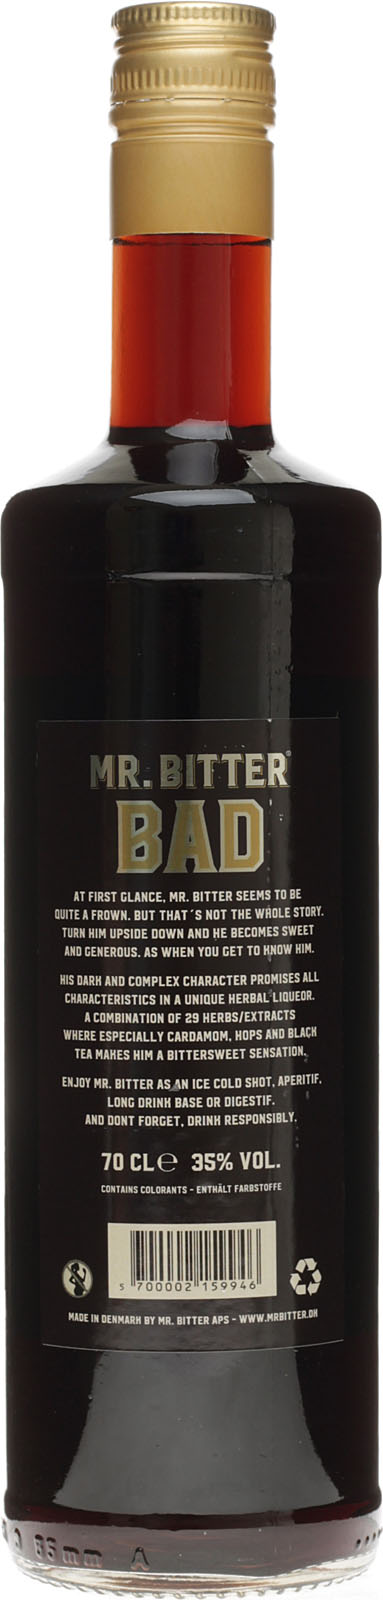 Mr. Bitter Bad Likör 0,7 Liter 35 % Vol. im Shop kaufen